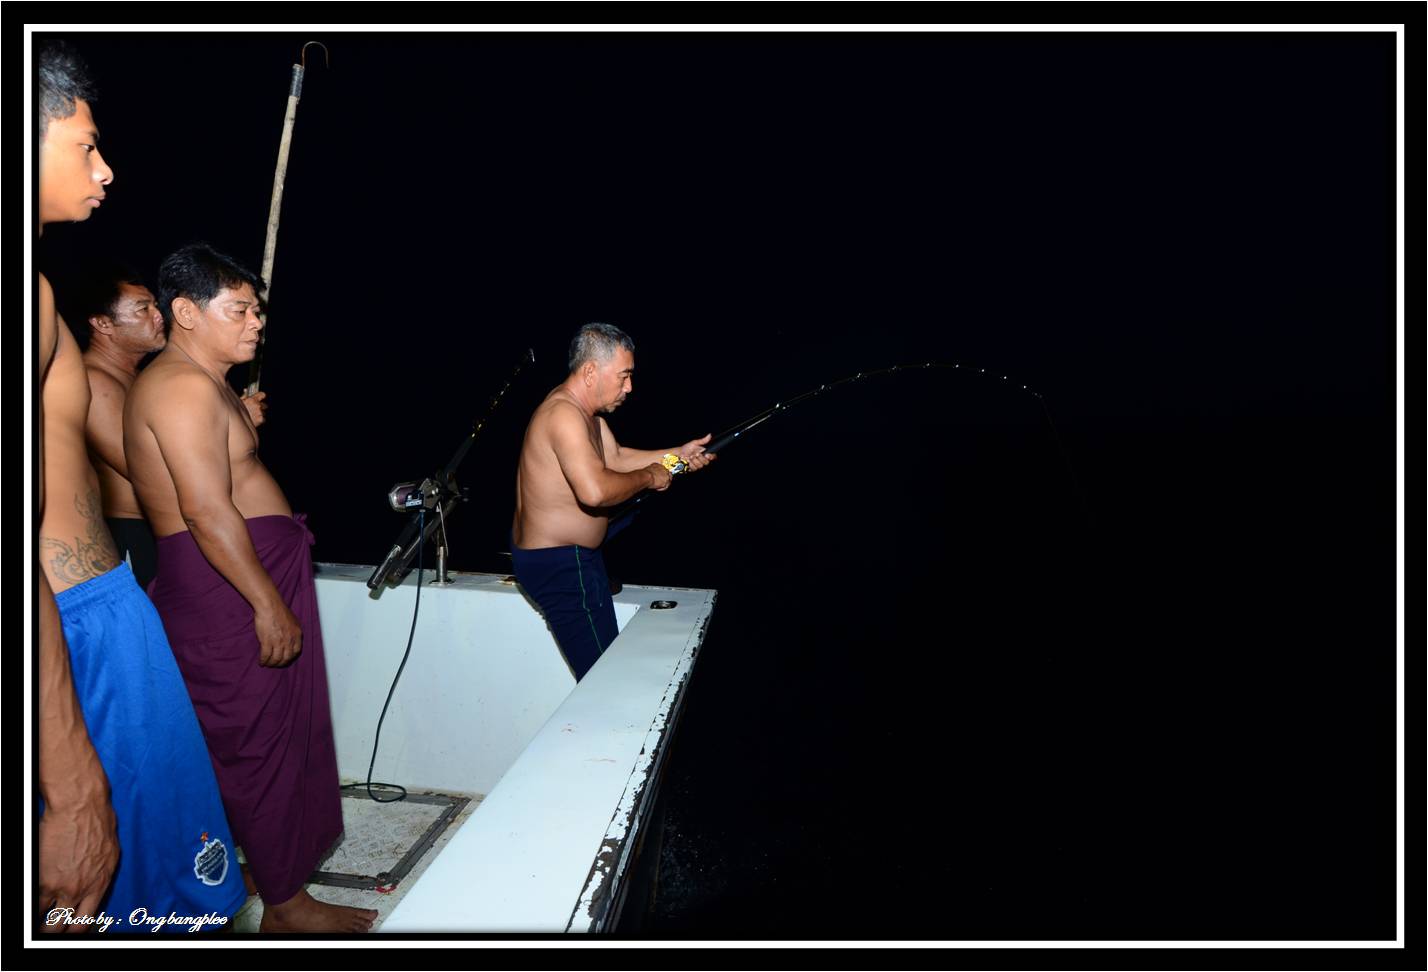 บังชายเล่นจนสามารถคอนโทรลให้ปลาเข้าใกล้เรือได้แล้วครับ....ปลาพาสายวิ่งออกไปทั้งทางซ้ายทางขวา แทบจะรำ